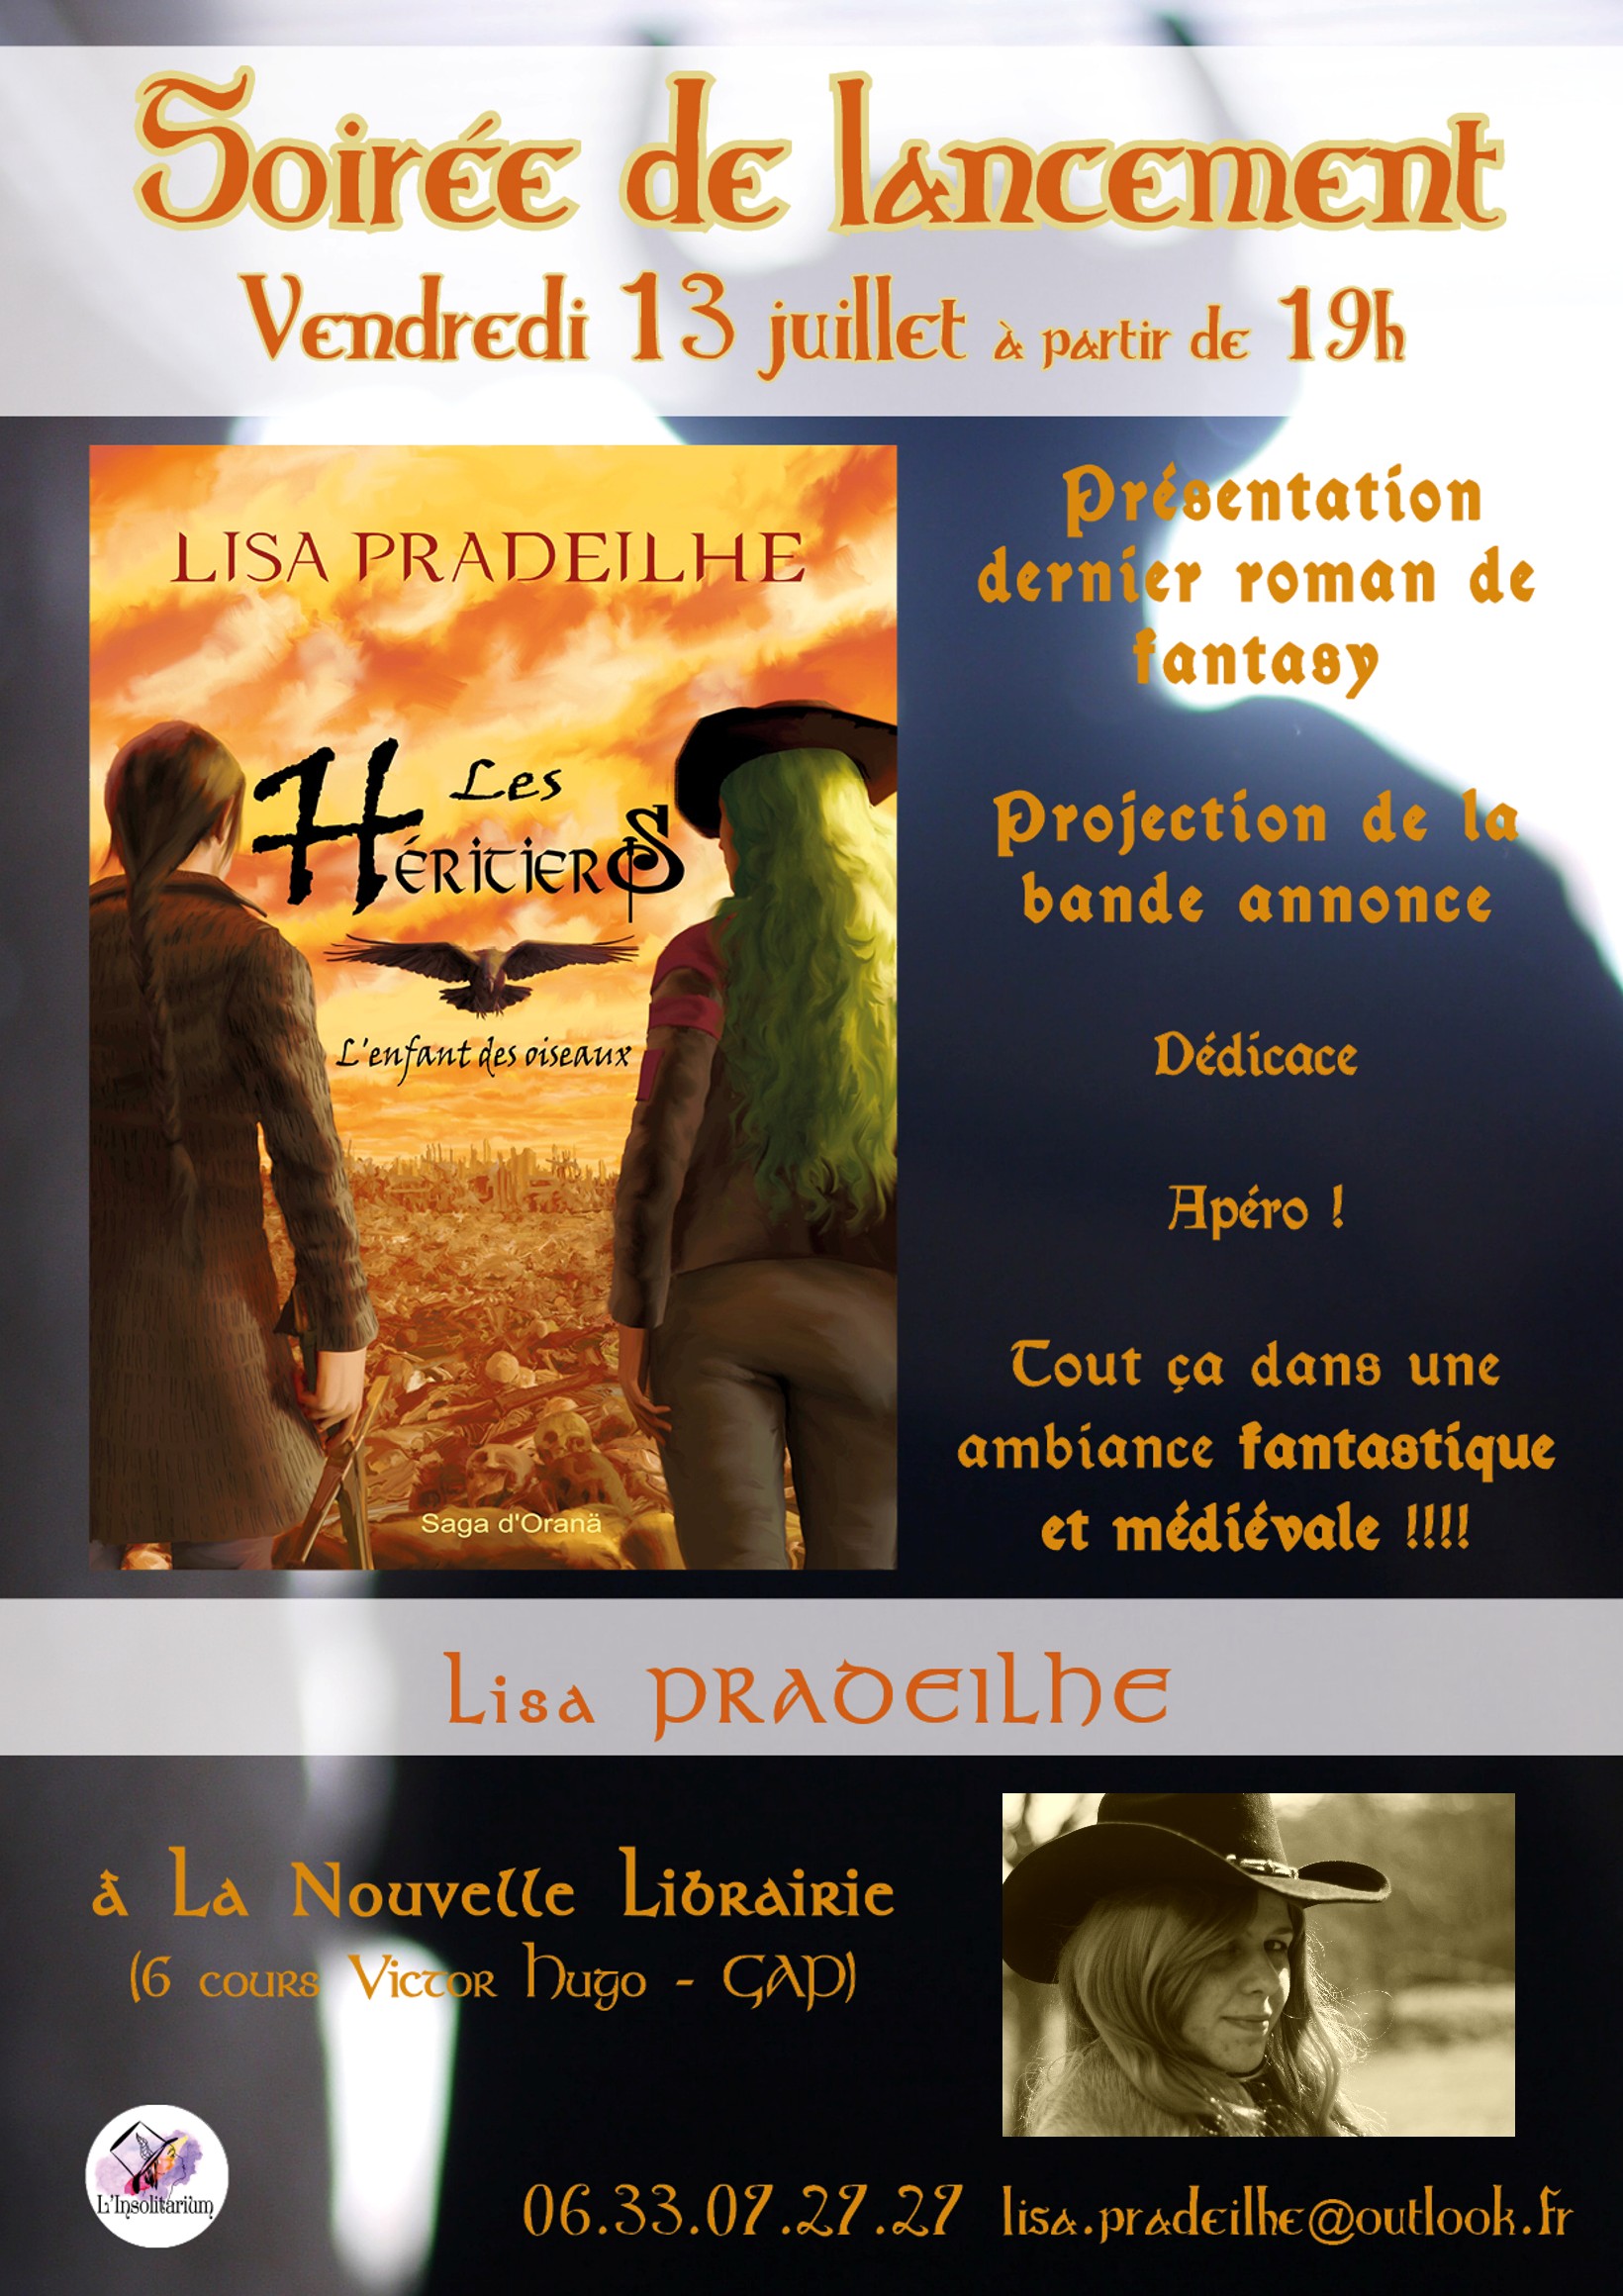 Soirée de lancement du nouveau roman de fantasy de Lisa Pradeilhe